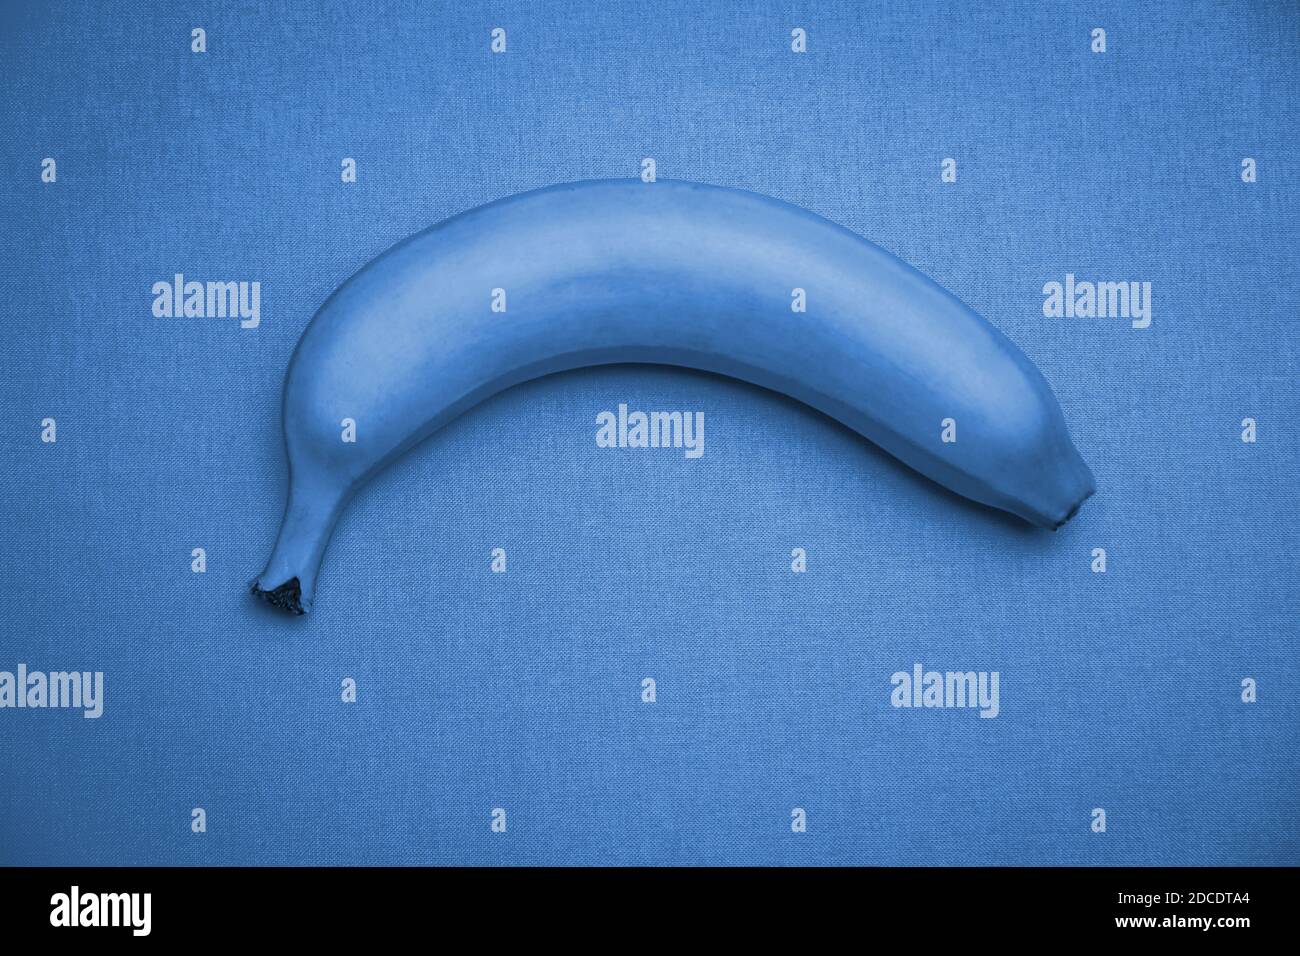 Une banane de couleur bleue classique isolée sur un fond bleu texturé, vue du dessus. Fond universel, modèle. Copier l'espace. Couleur tendance 2020. Banque D'Images